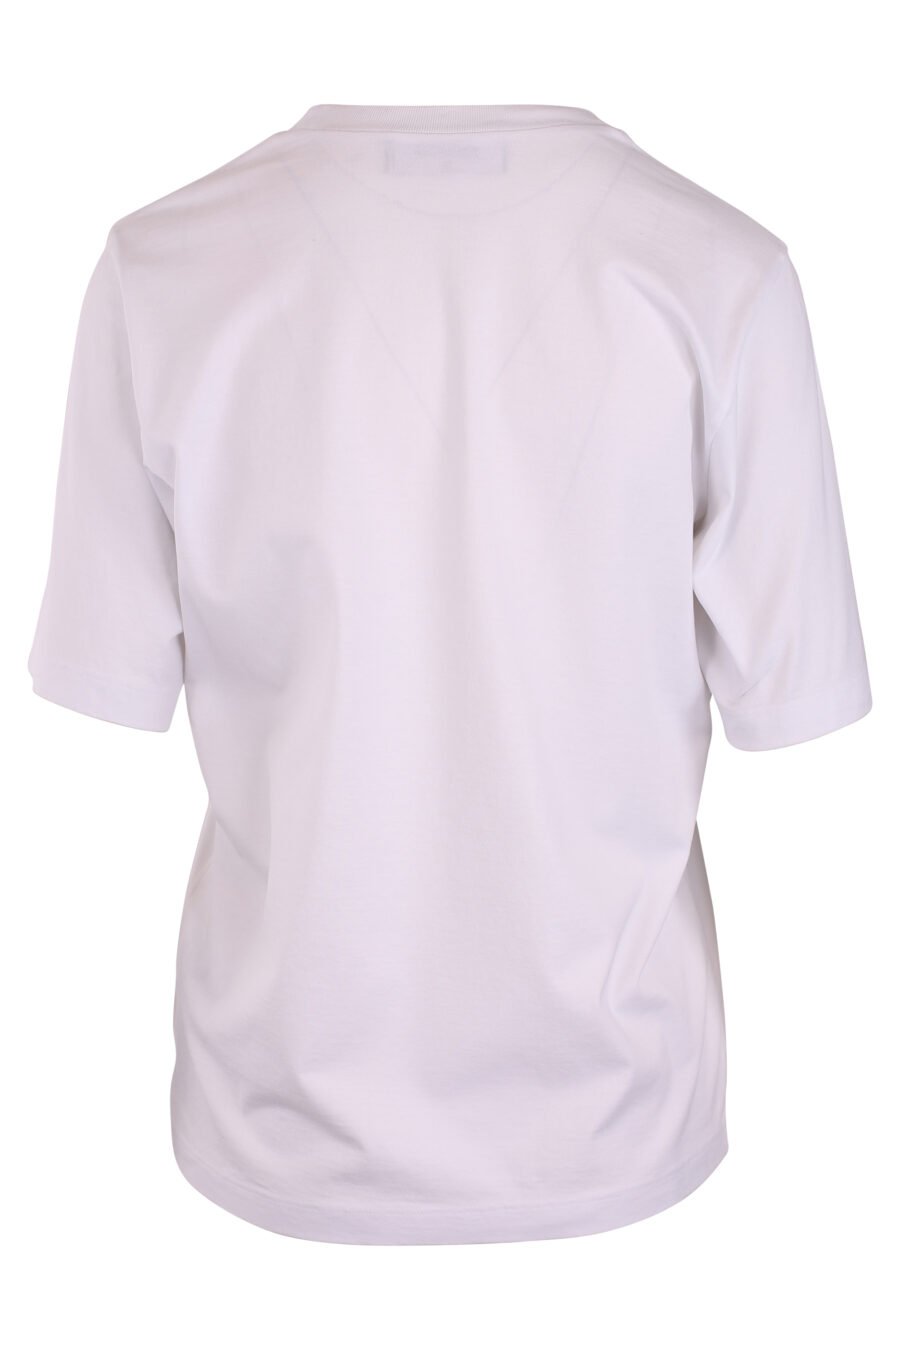 Camiseta blanca con logo "DSQ2" acapulco - IMG 3273